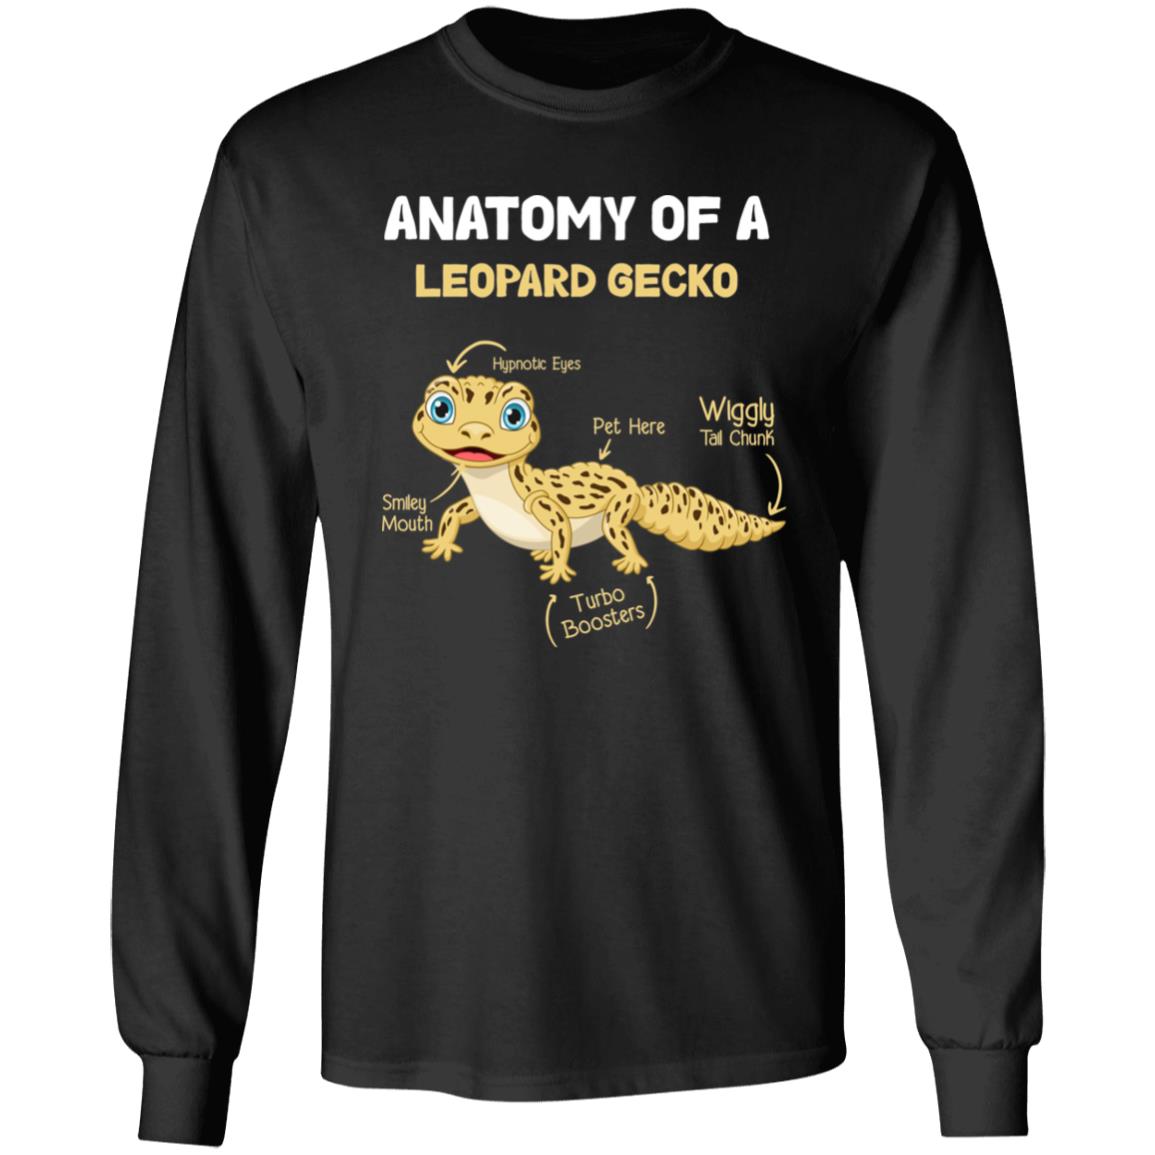 Anatomy of A Leopard Gecko -  Men's Long Sleeved T-Shirt